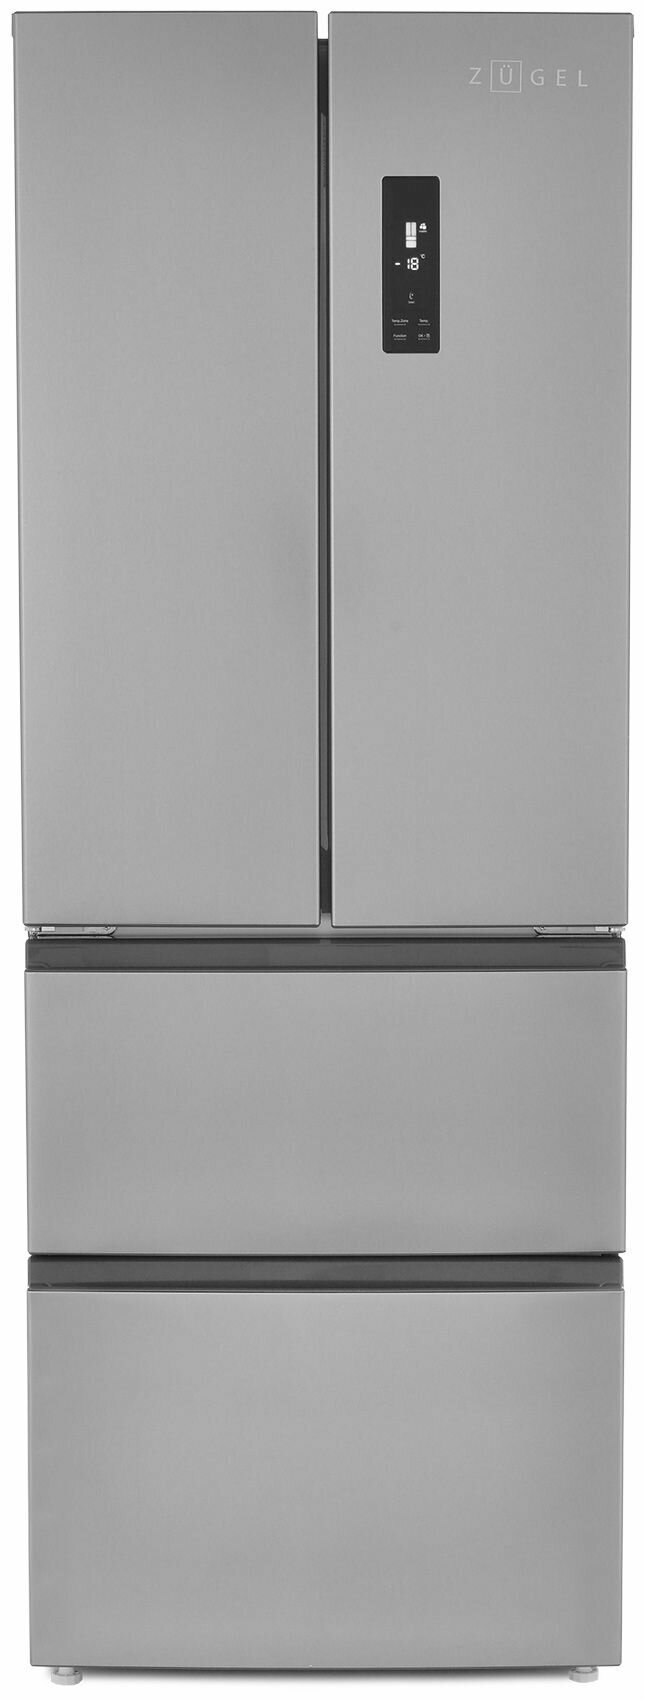 Многокамерный холодильник ZUGEL ZRFD361X, нержавеющая сталь